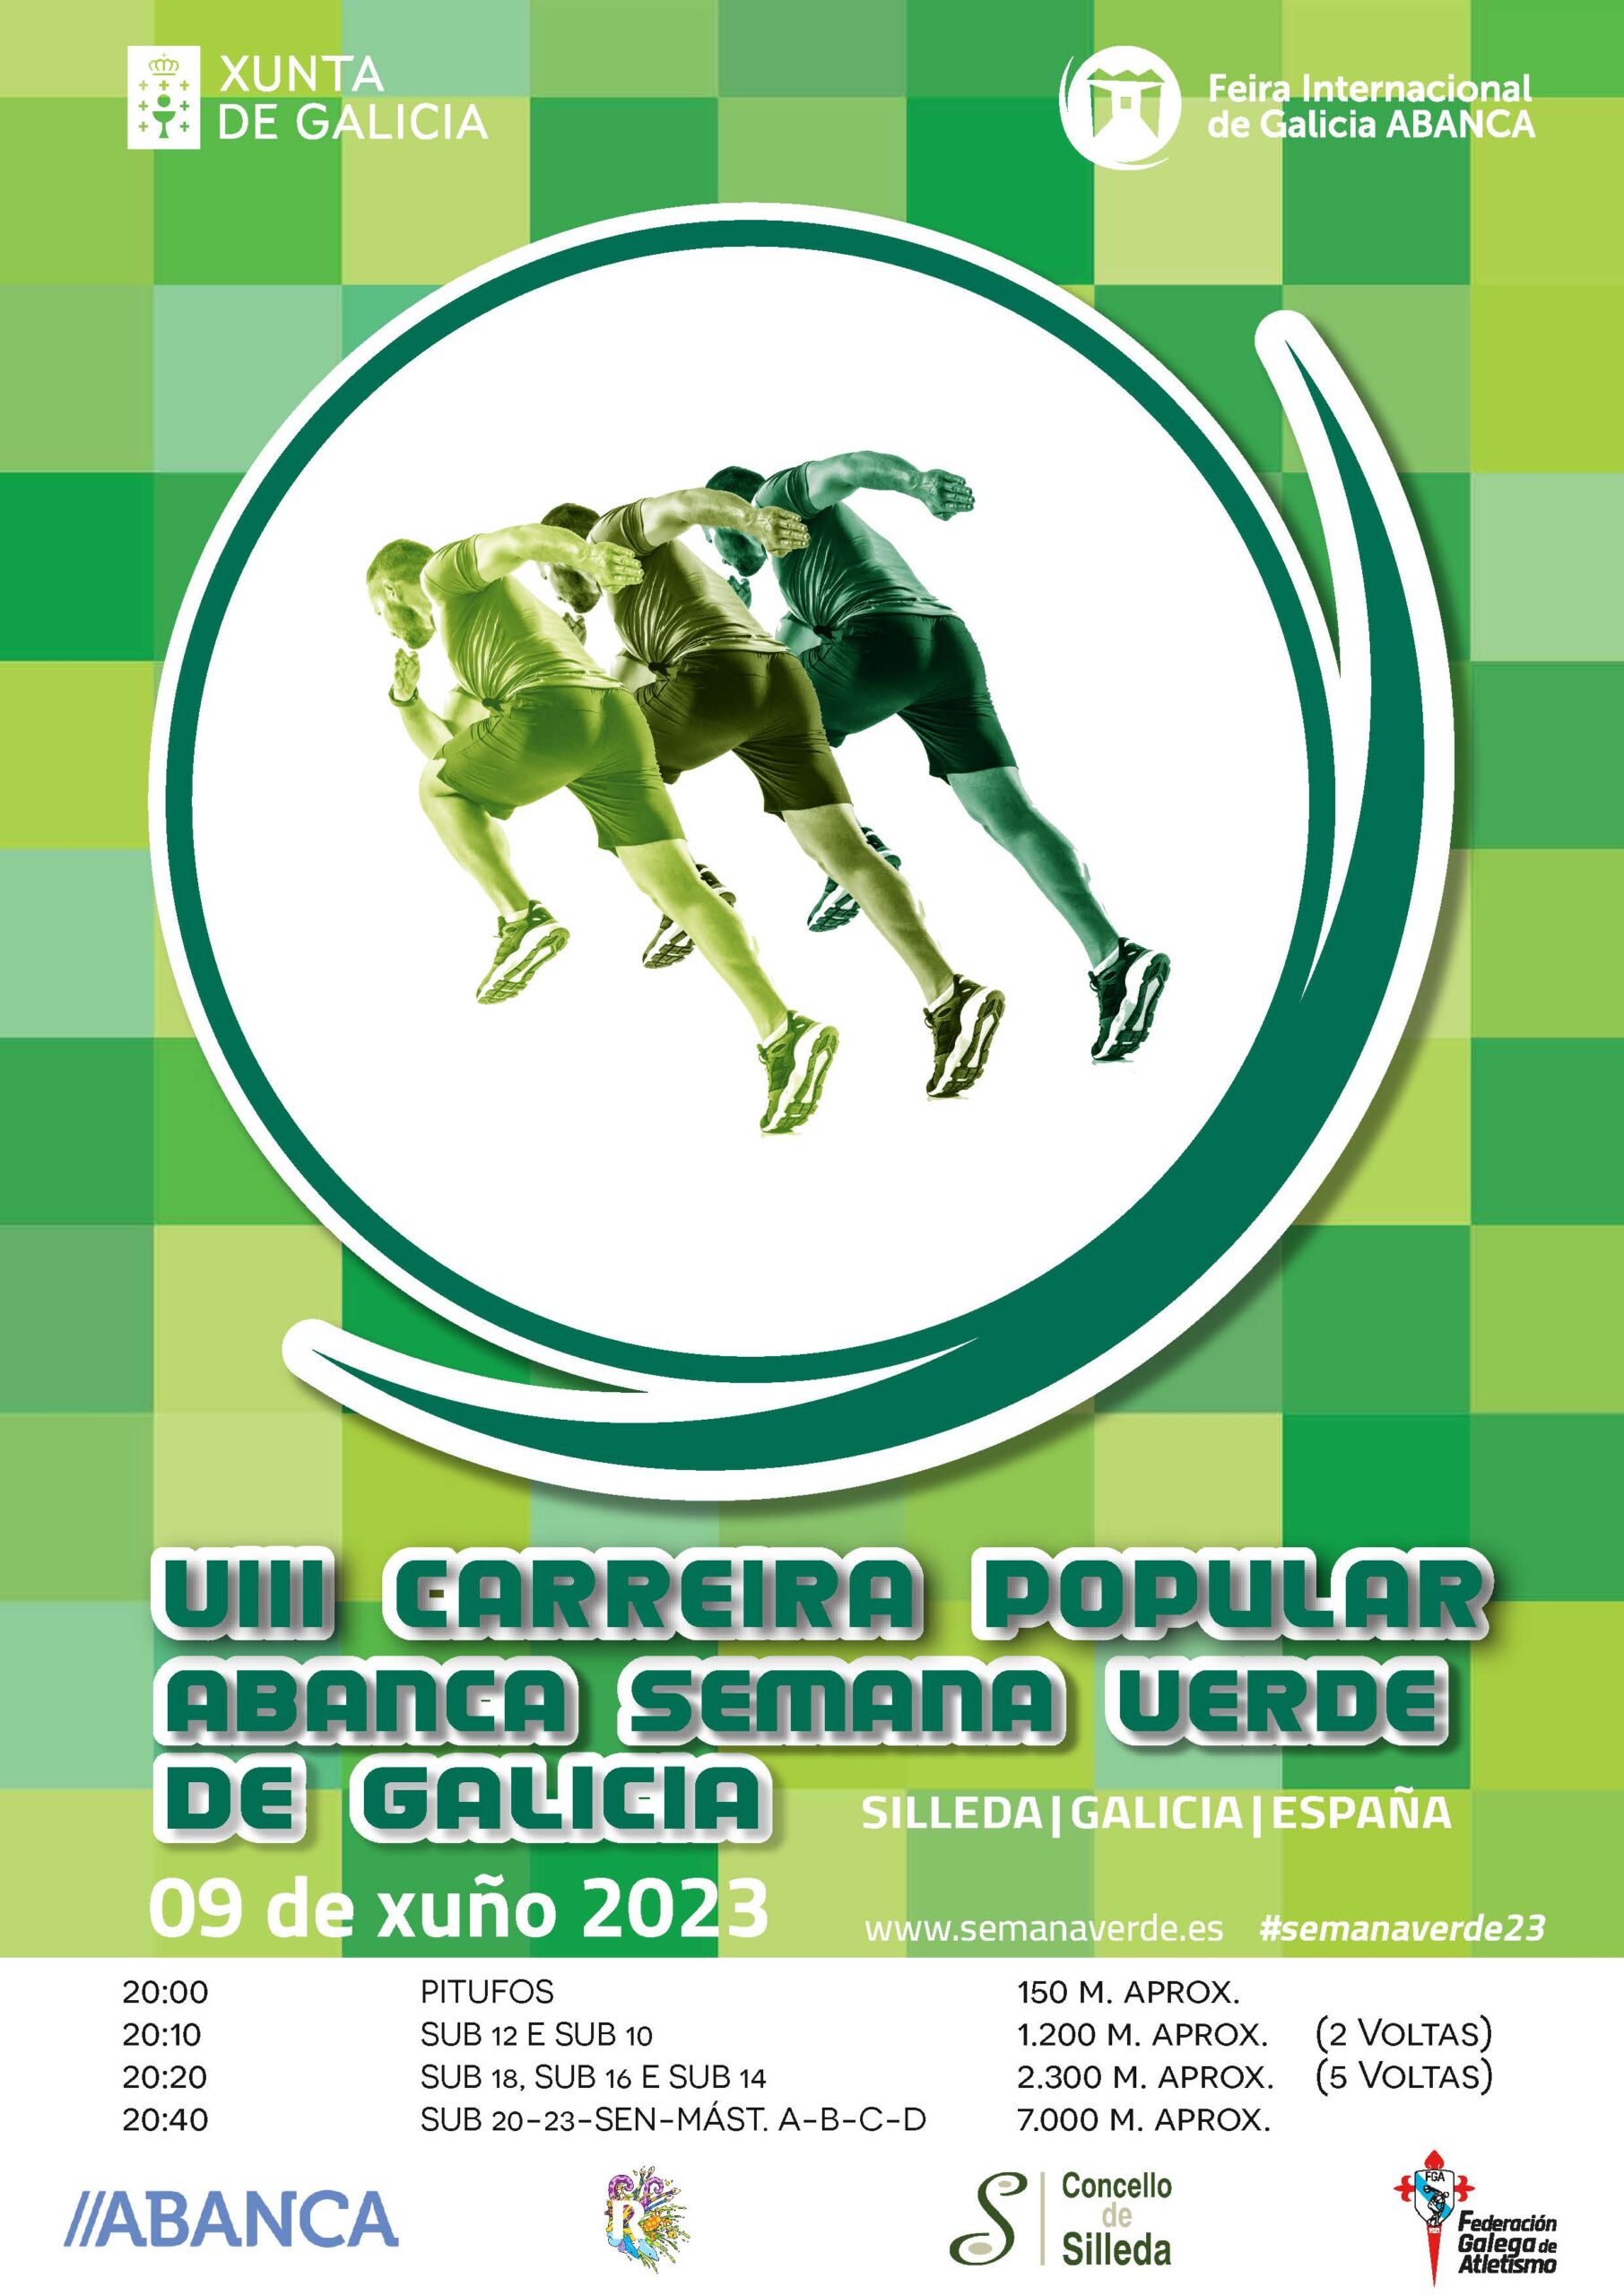 VIII Carreira Popular ABANCA Semana Verde de Galicia